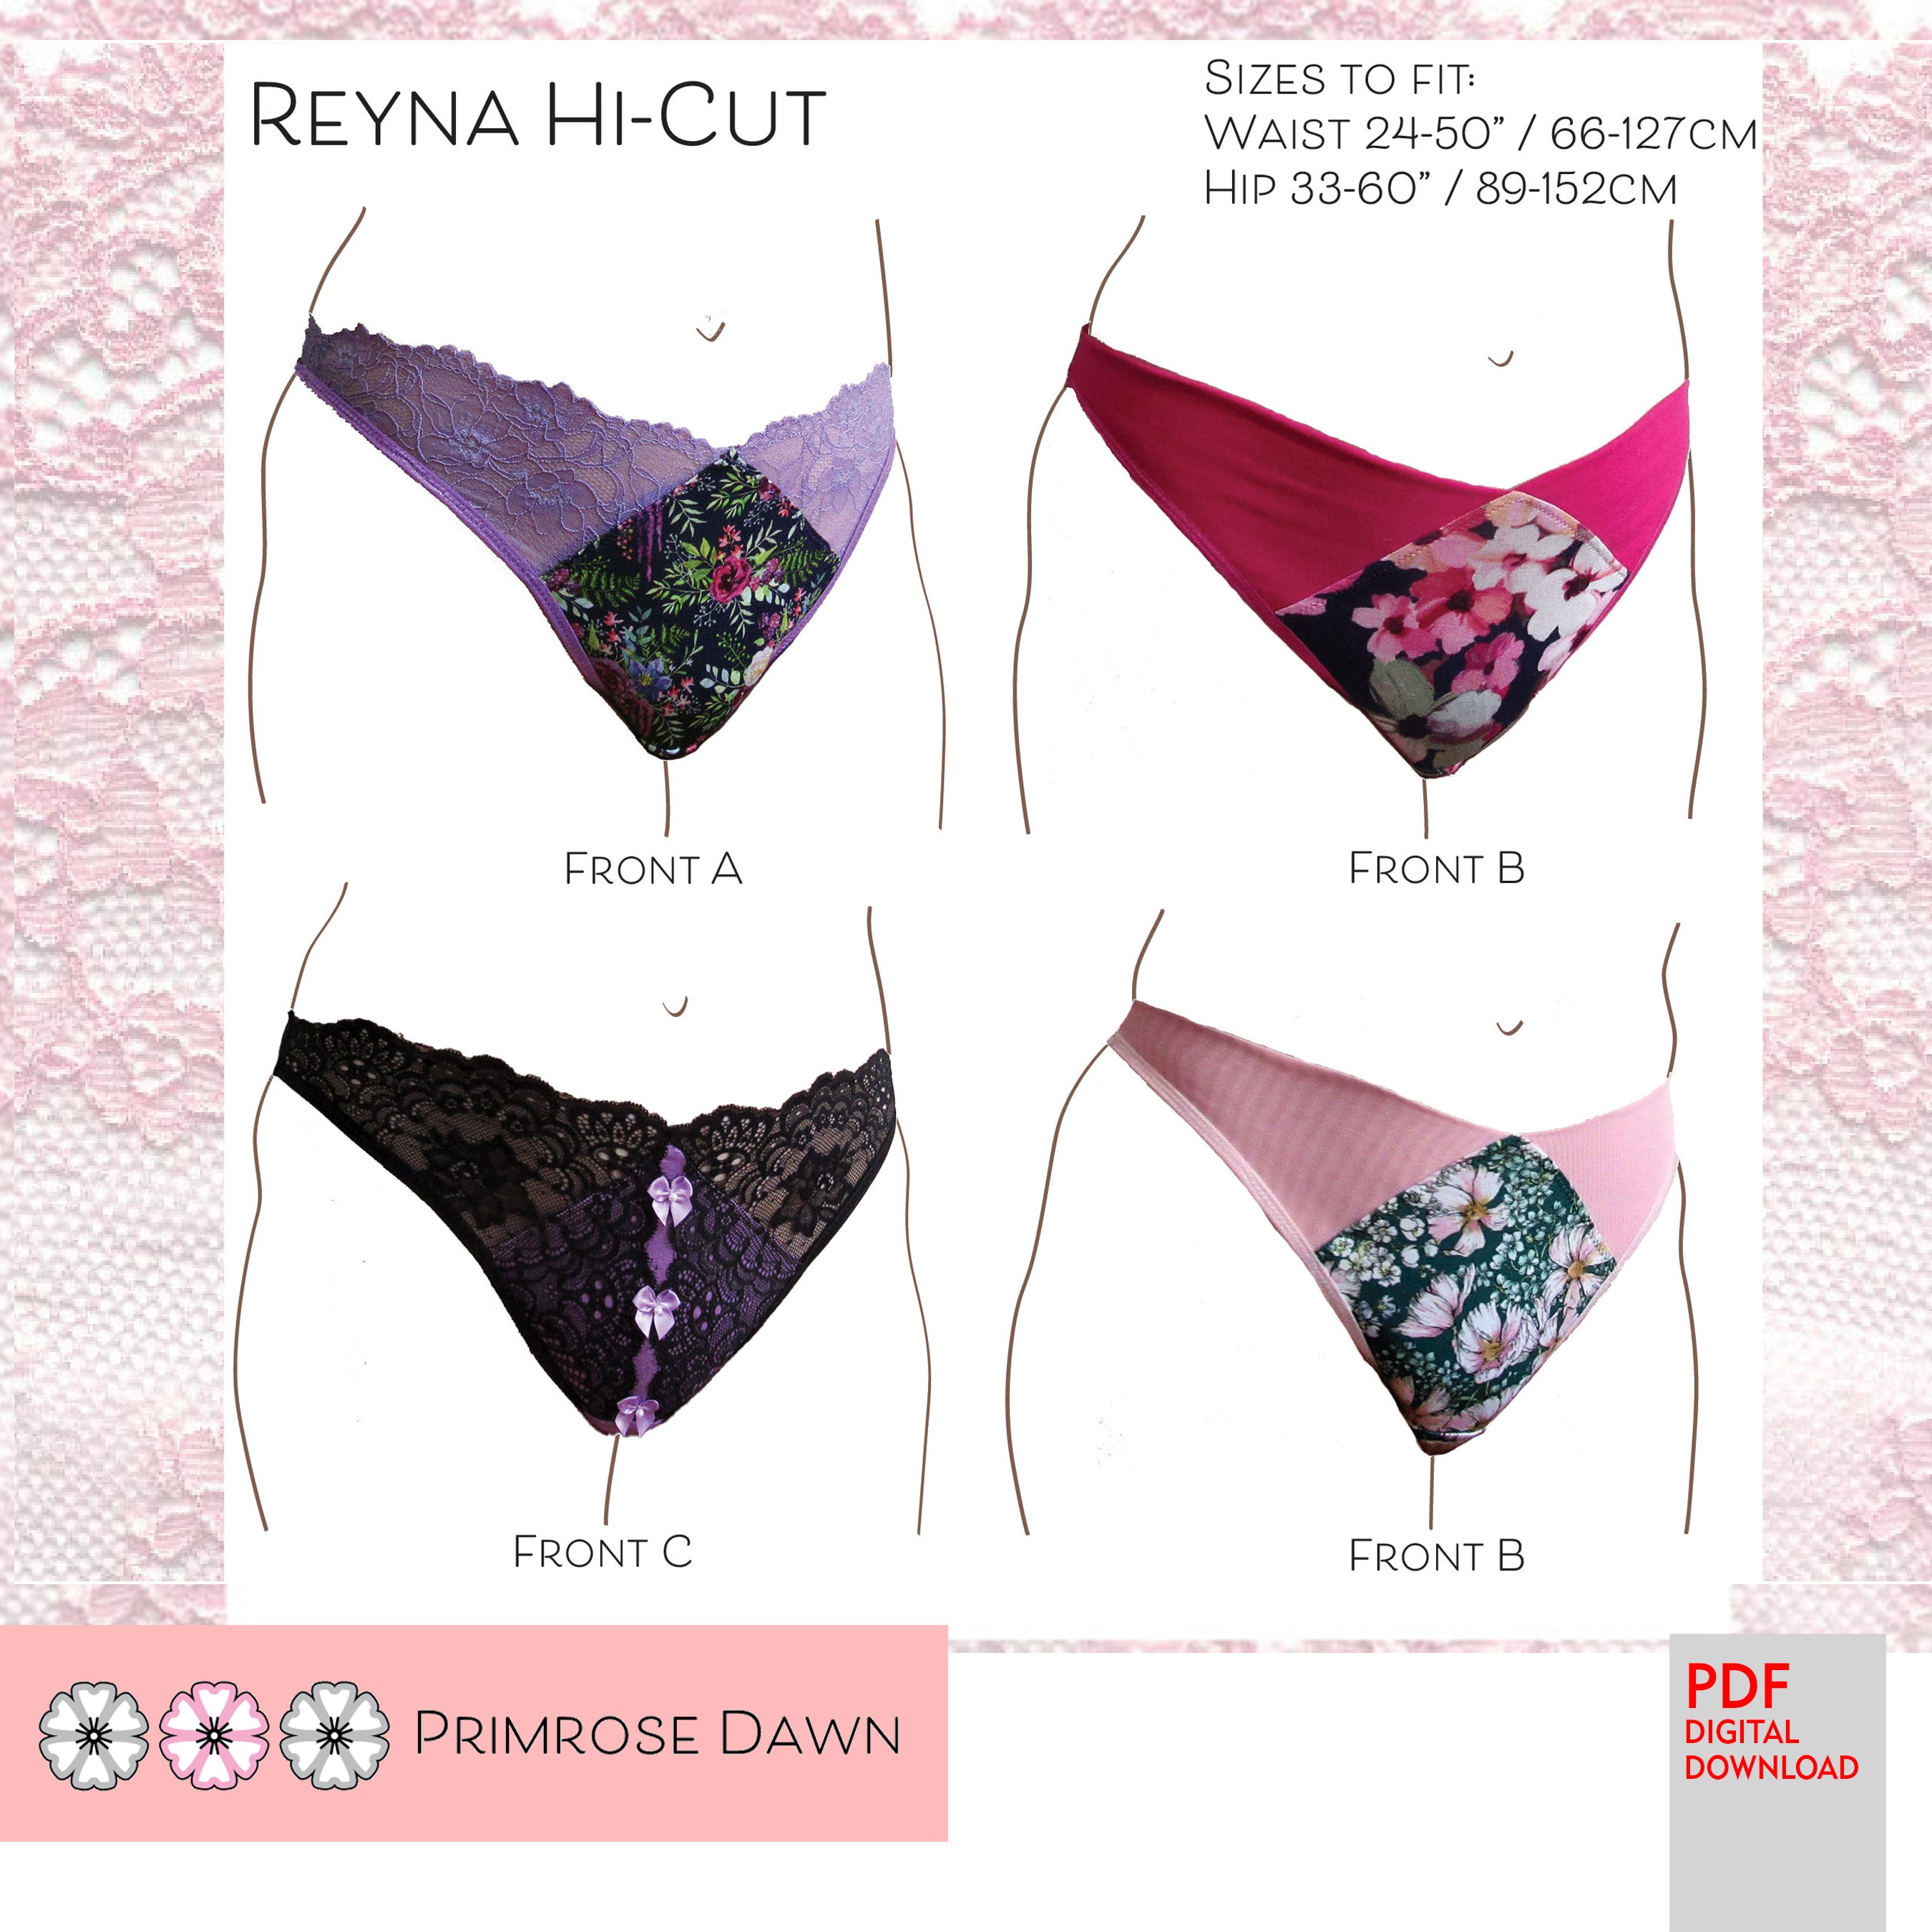 PDF Primrose Dawn Sewing Pattern- Reyna Hi-Cut/French Cut Panty